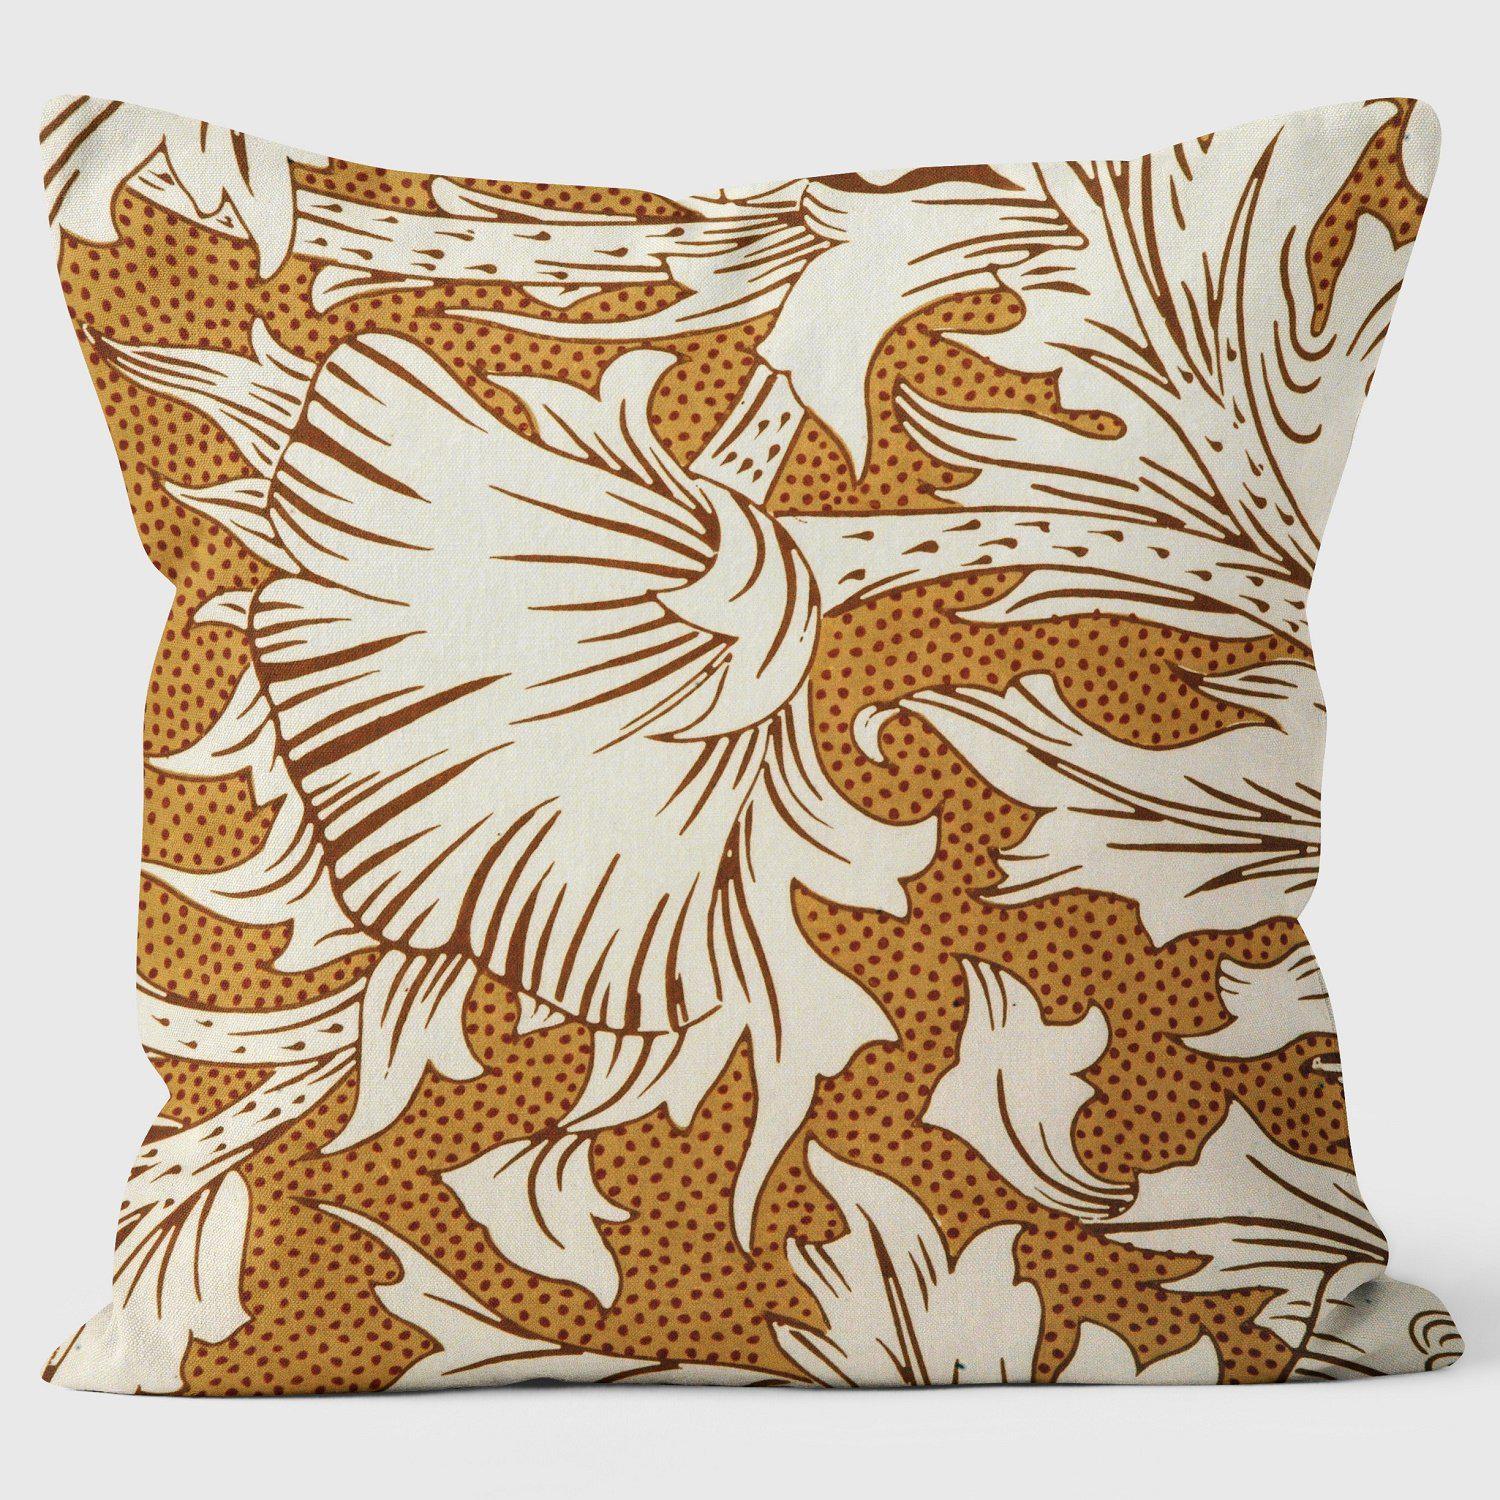 Horn Poppy - William Morris Cushion - Handmade Cushions UK - WeLoveCushions